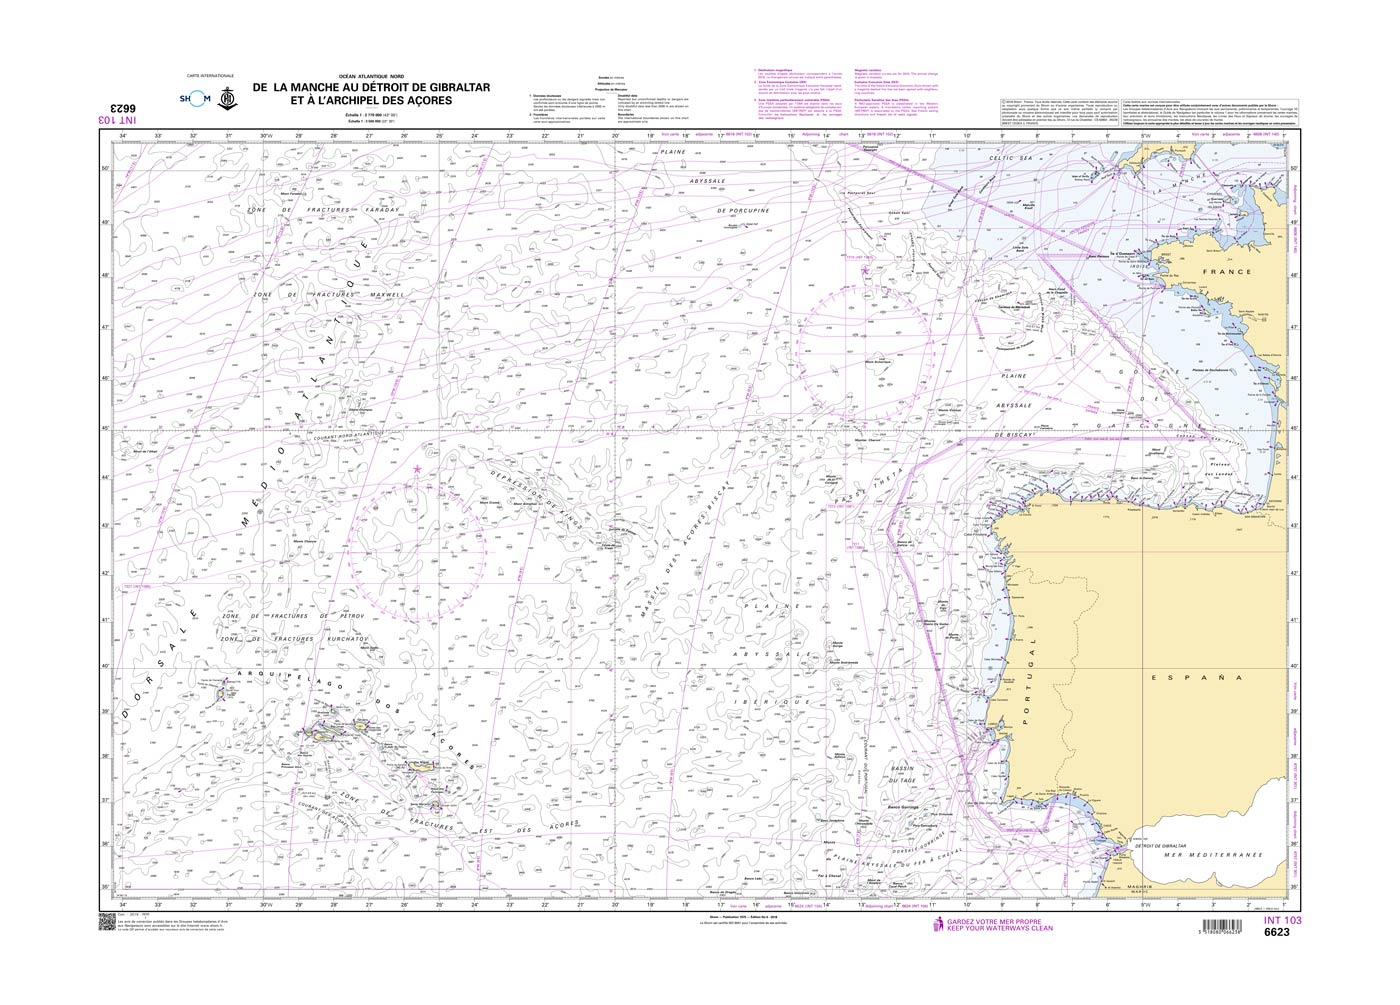 Shom 6623 - INT 103 De La Manche au Détroit de Gibraltar et à l'archipel des Açores